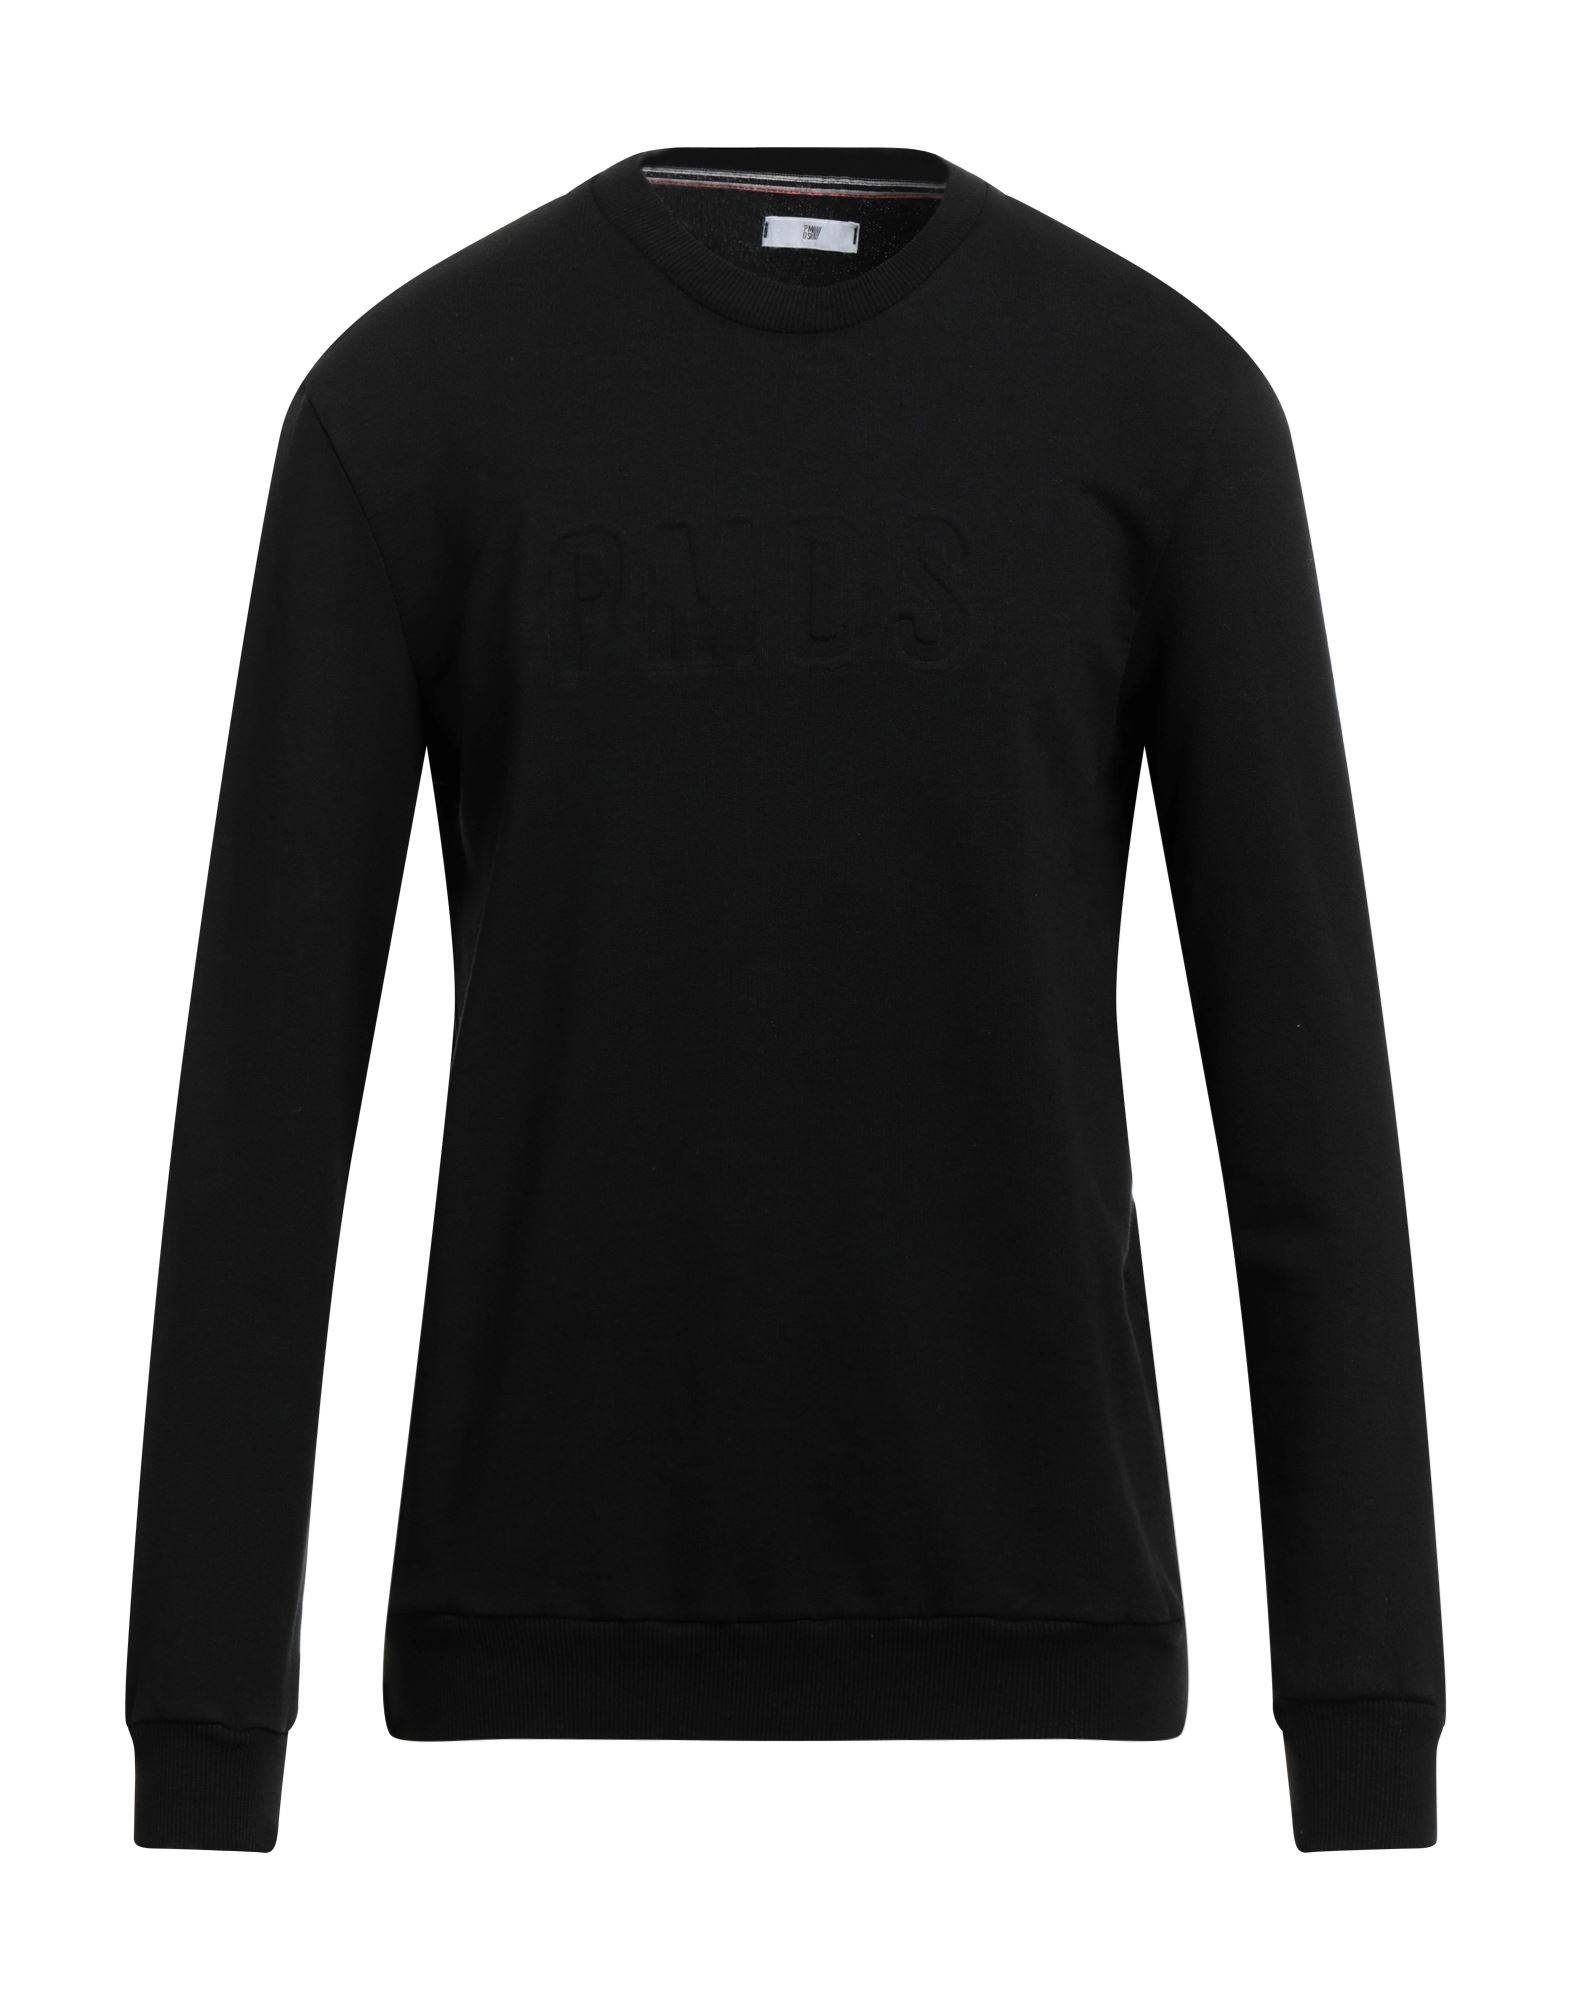 Shop Pmds Premium Mood Denim Superior Man Sweatshirt Black Size Xl Cotton